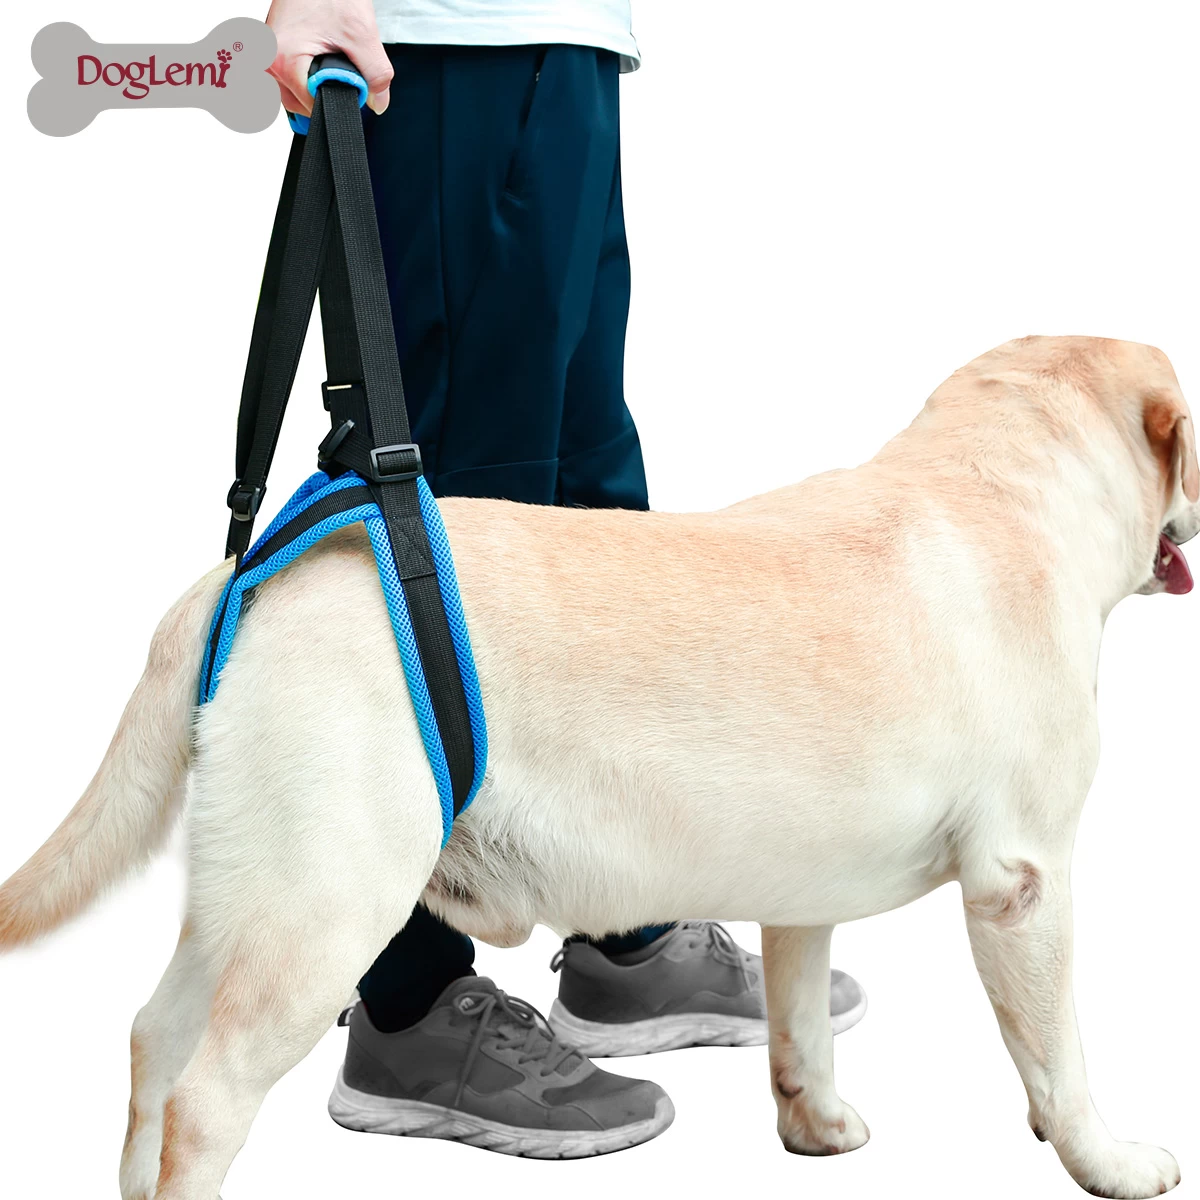 Dog hind leg auxiliary belt